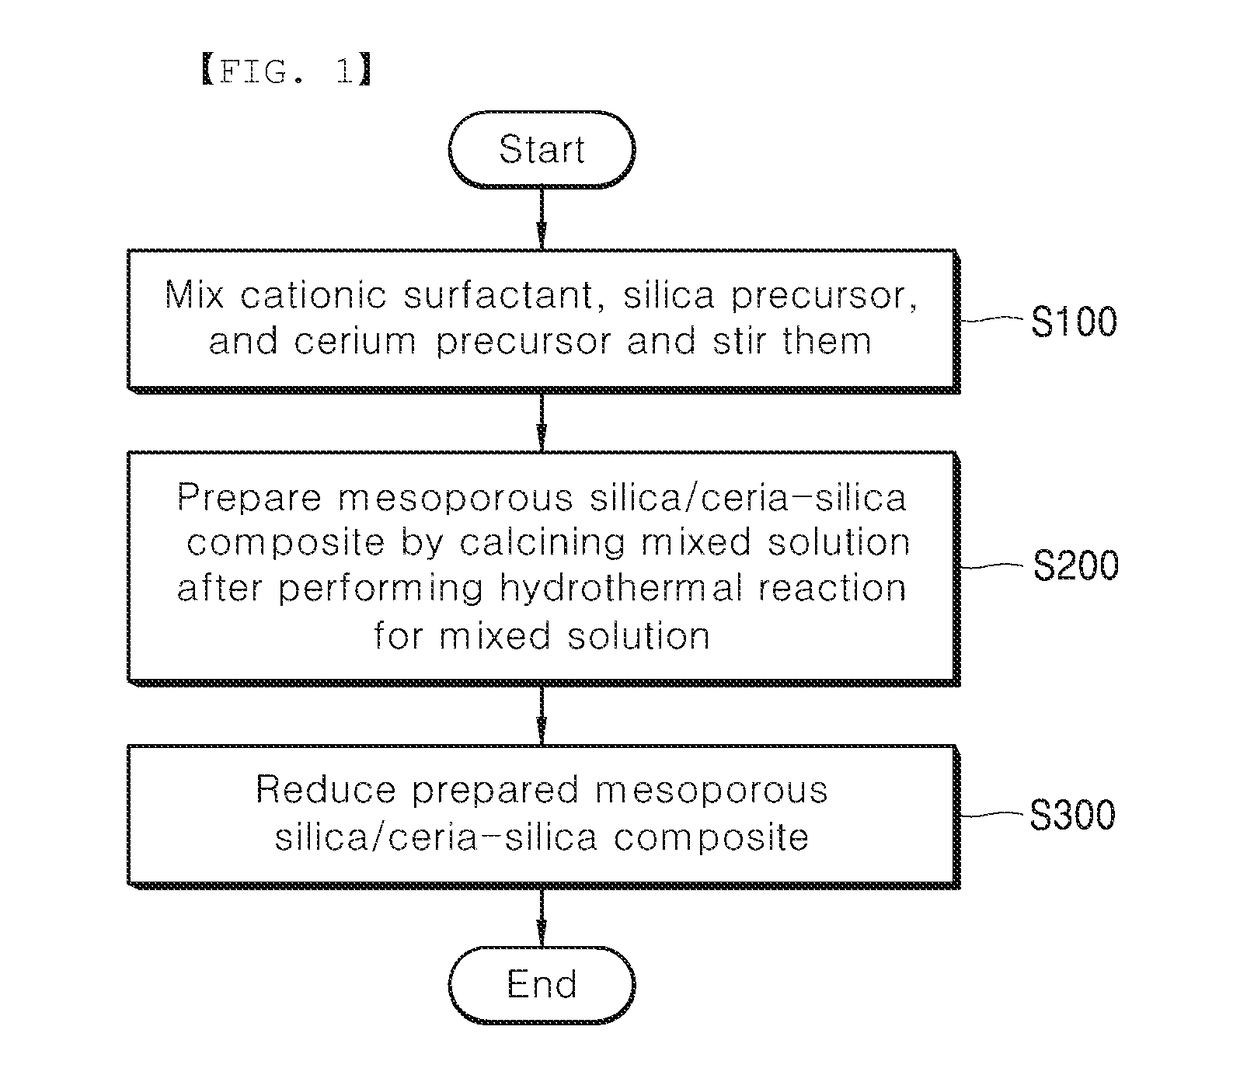 Mesoporous silica/ceria-silica composite and method for preparing same